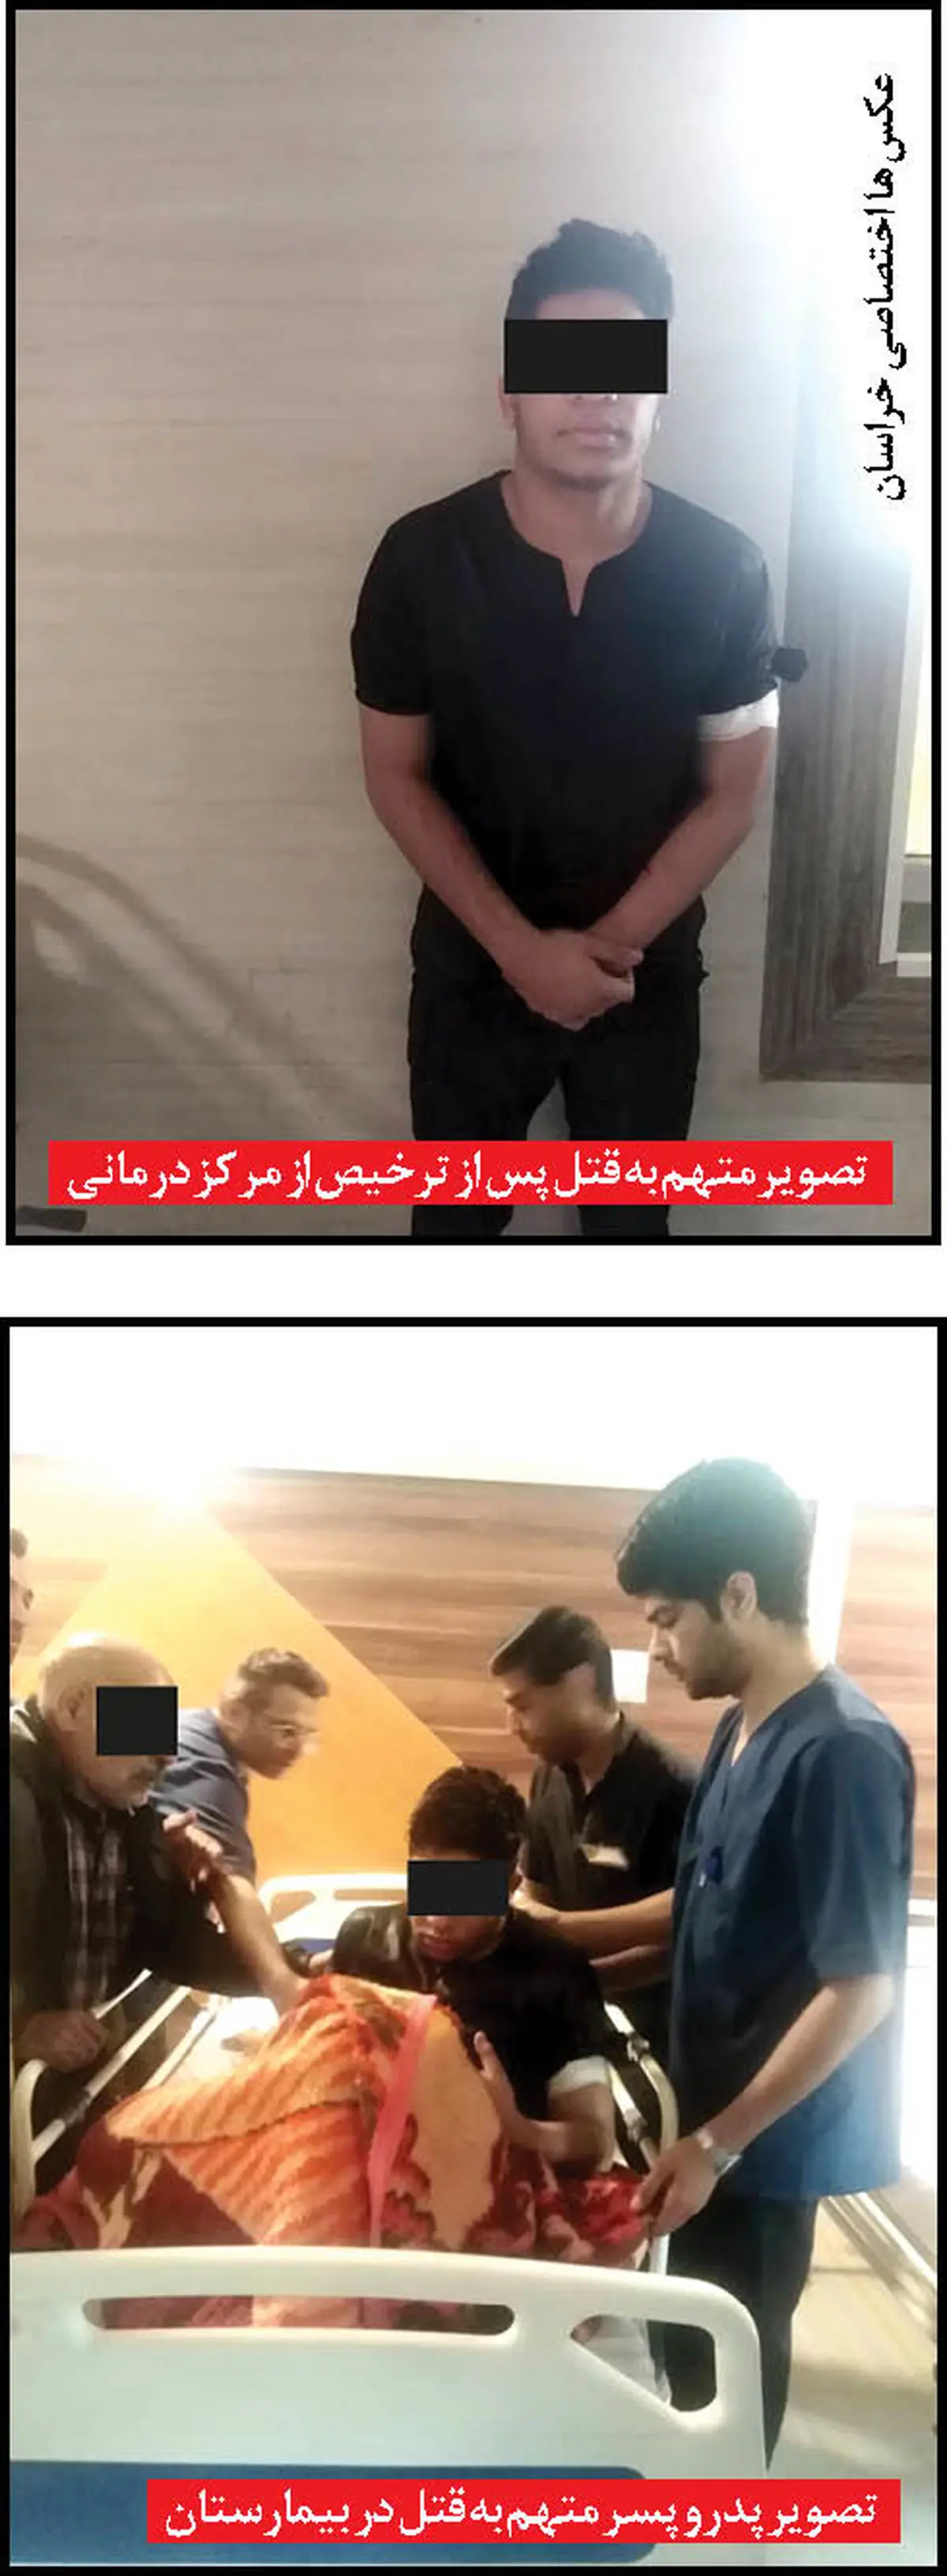 2 جنایت هولناک در مشهد در یک روز